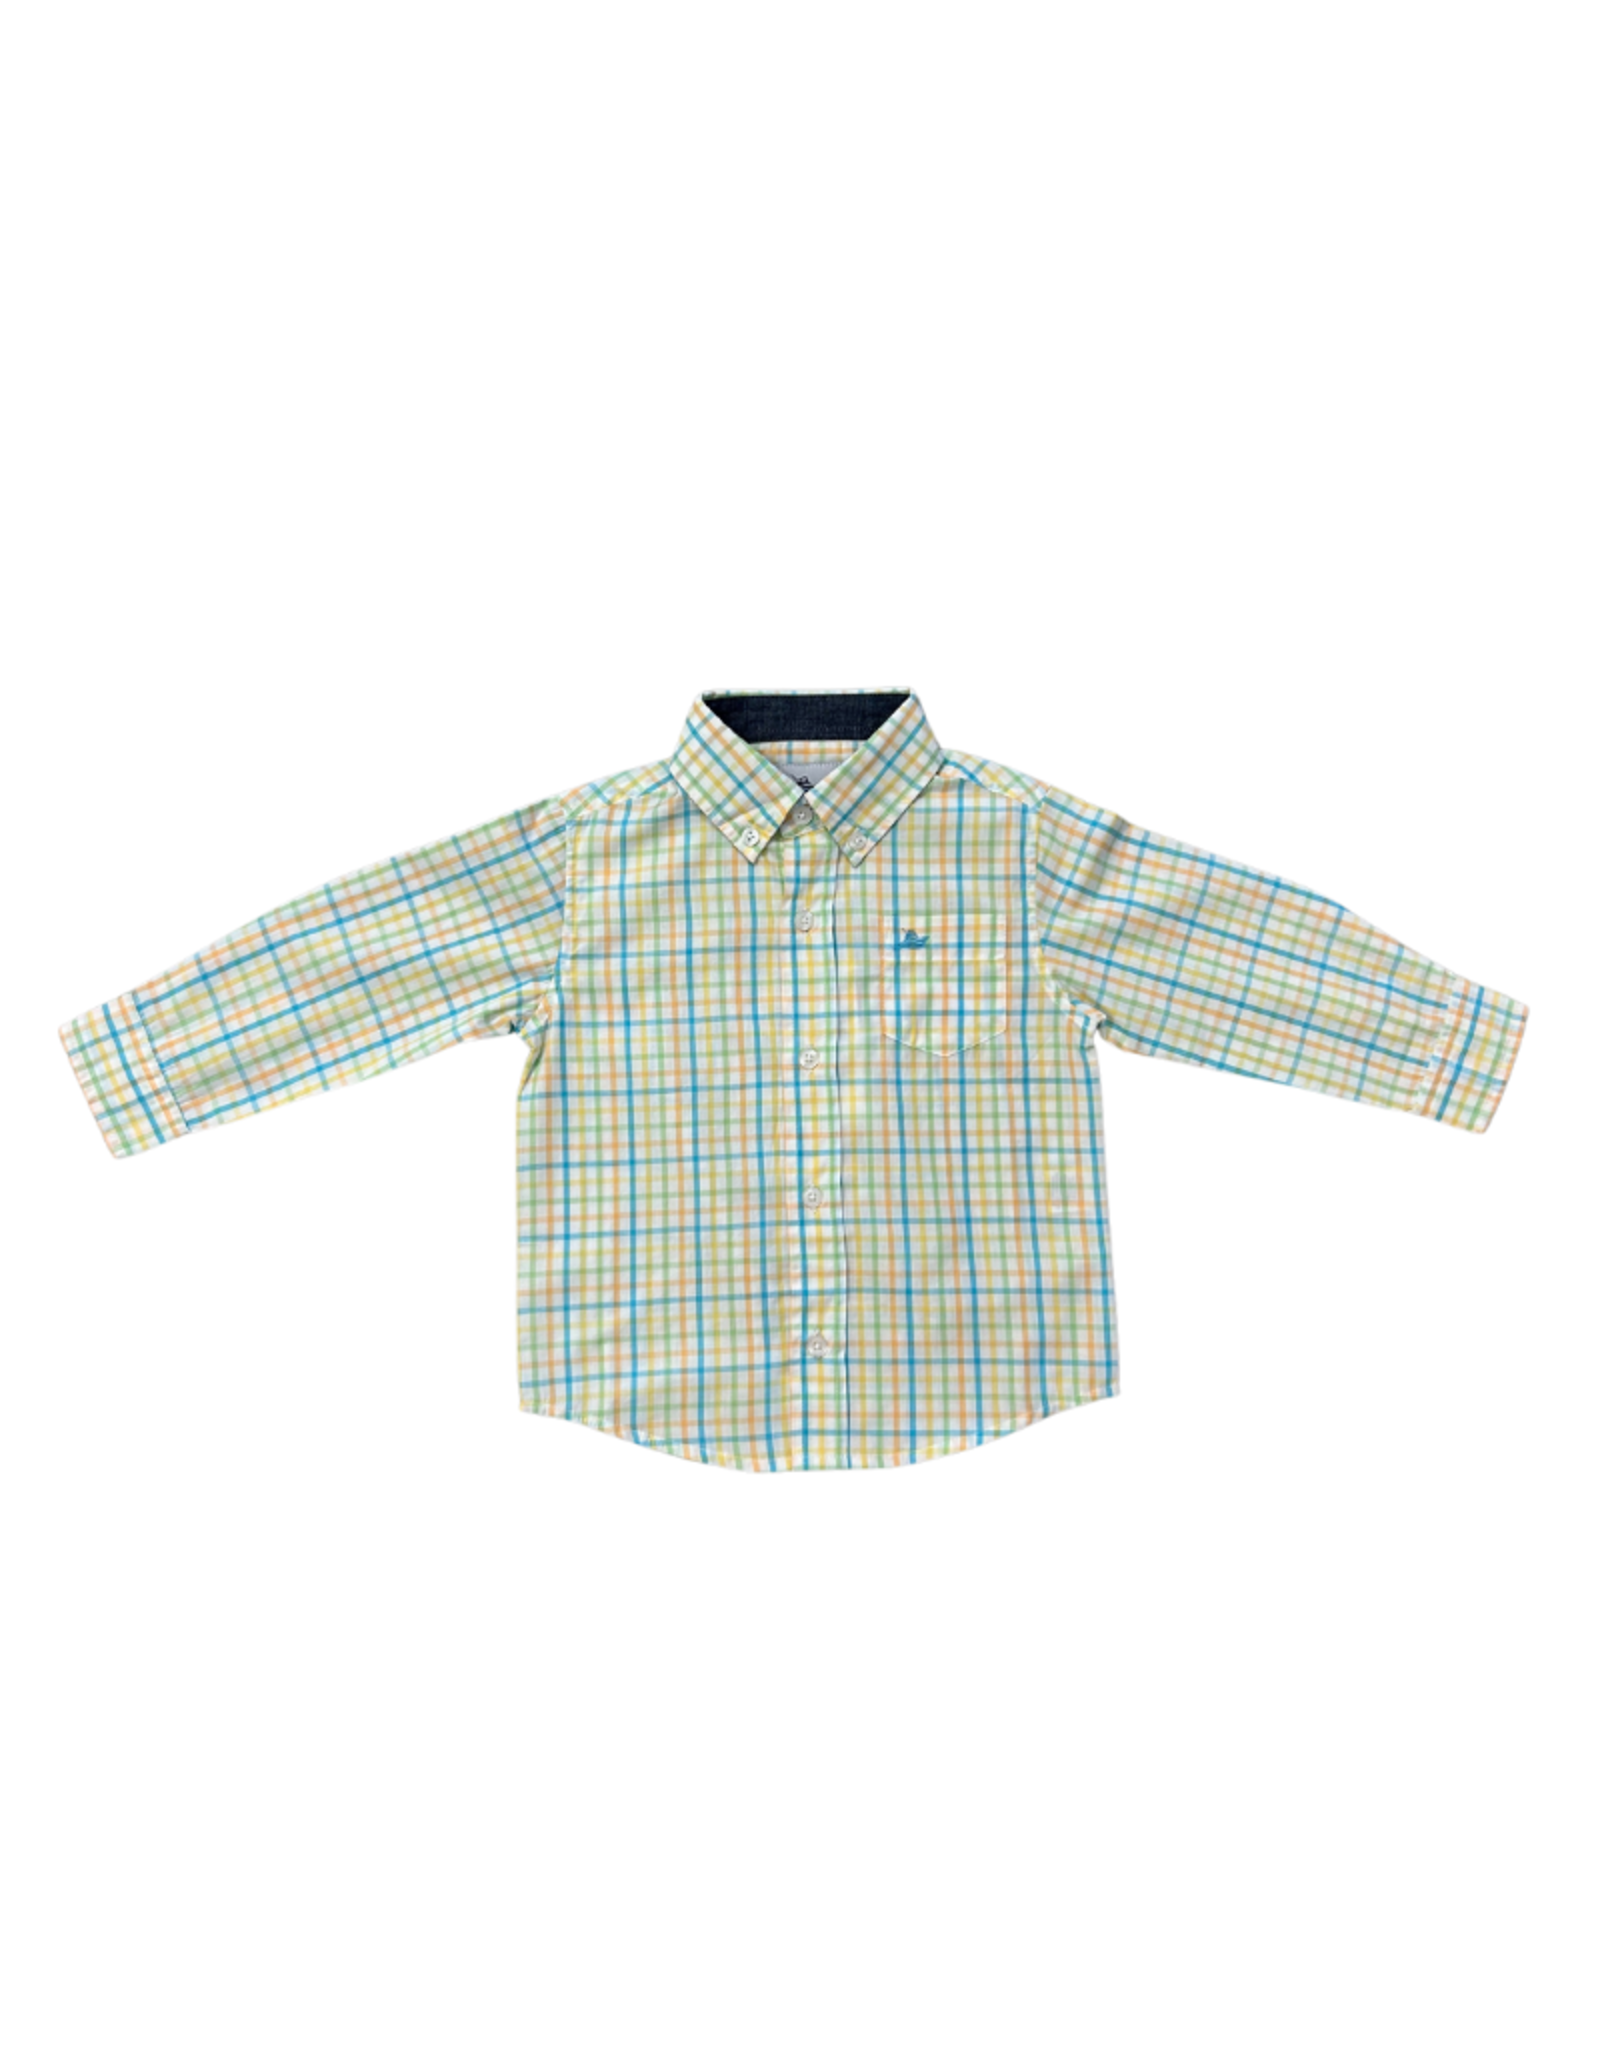 SouthBound Long Sleeve Dress Shirt - Petit Four/Golden/Reed/Peach